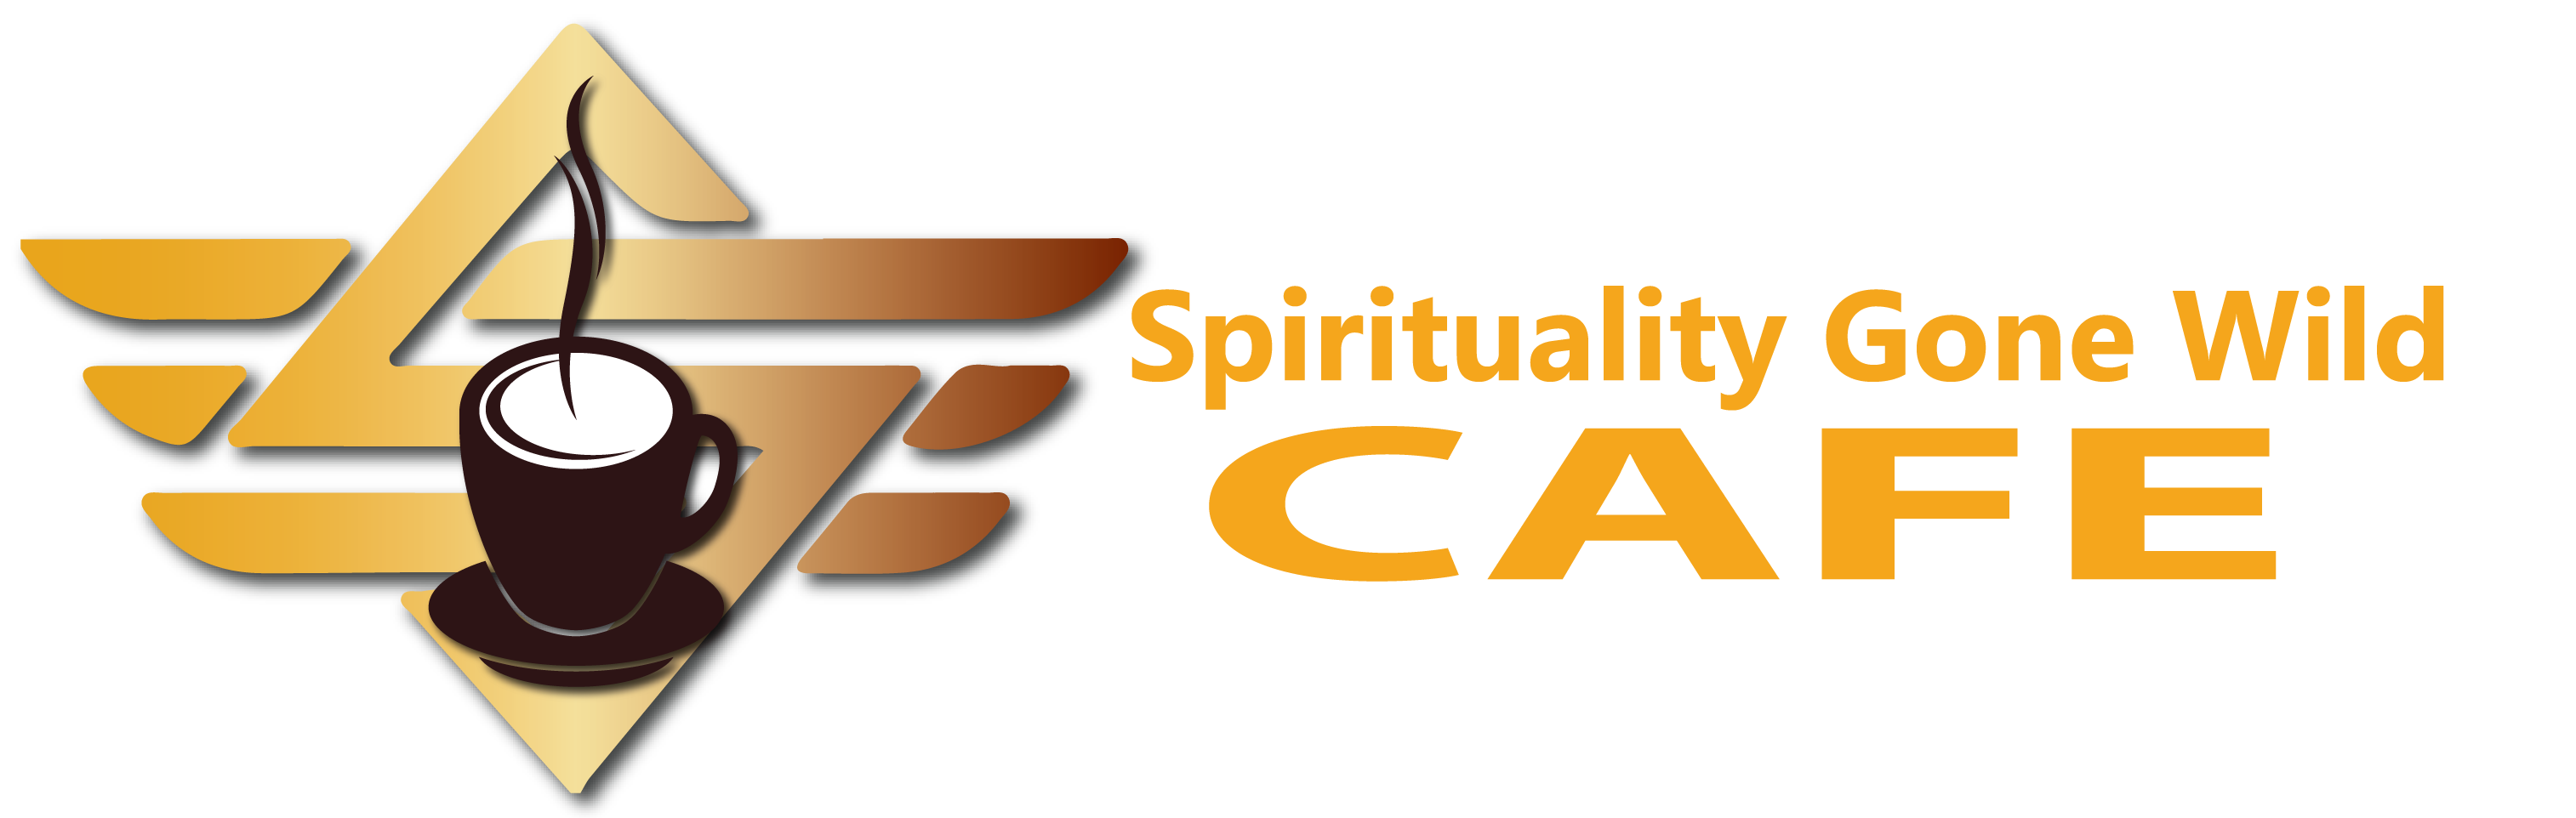 Spirituality Gone Wild Cafe